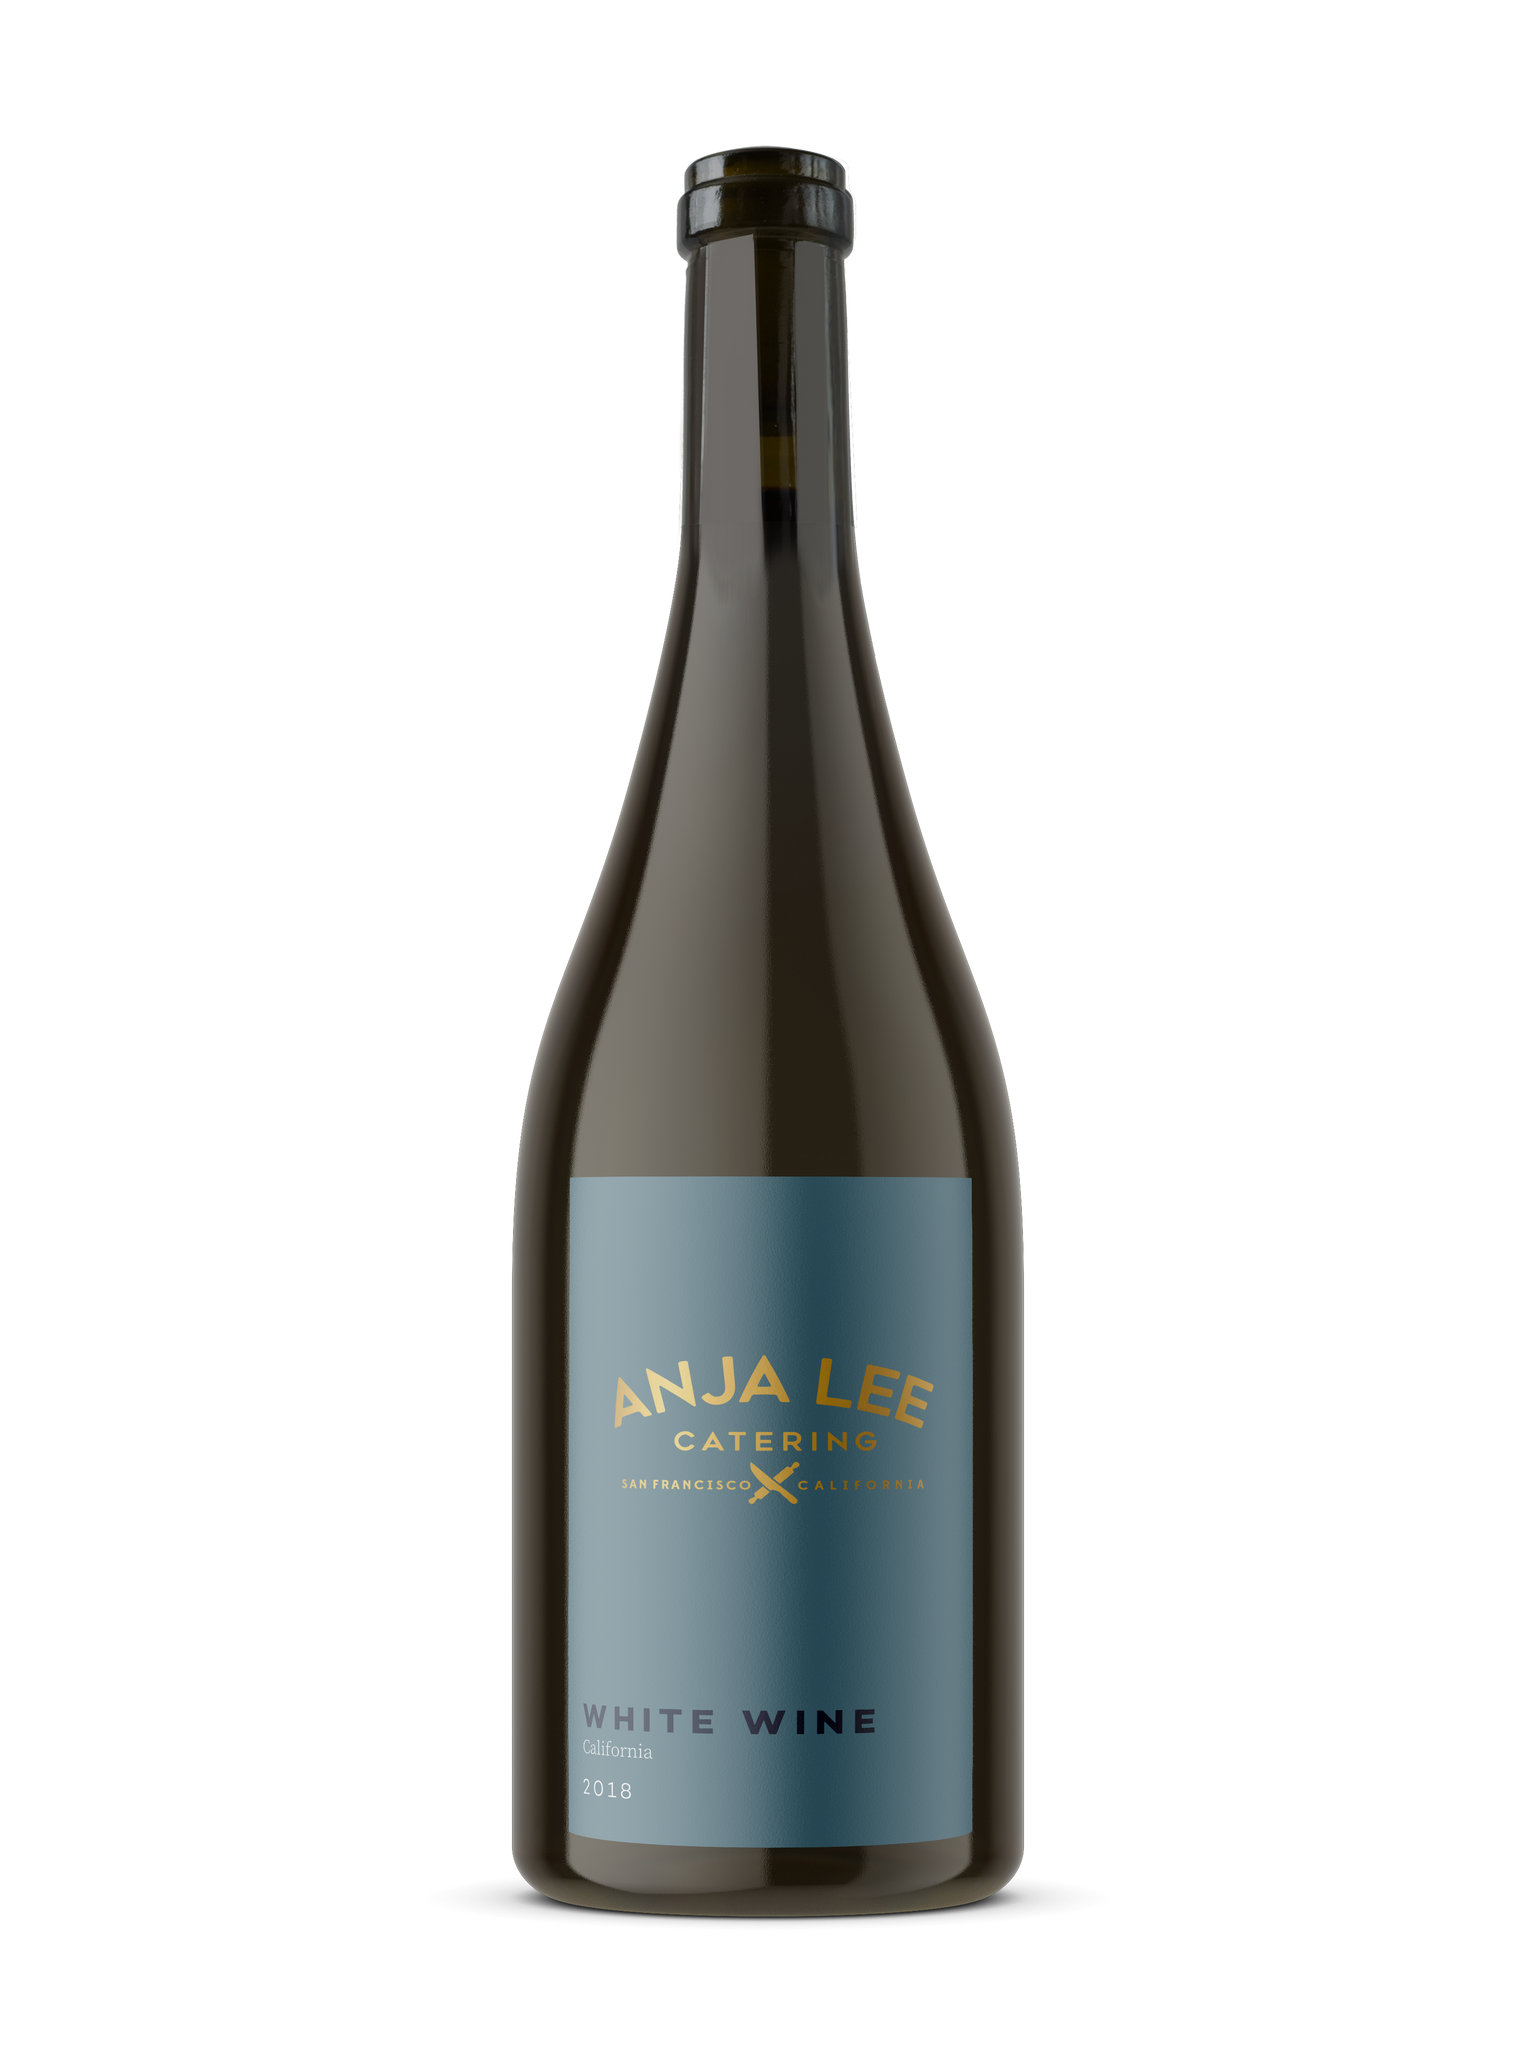 ALC 2018 California Sauvignon Blanc Blend